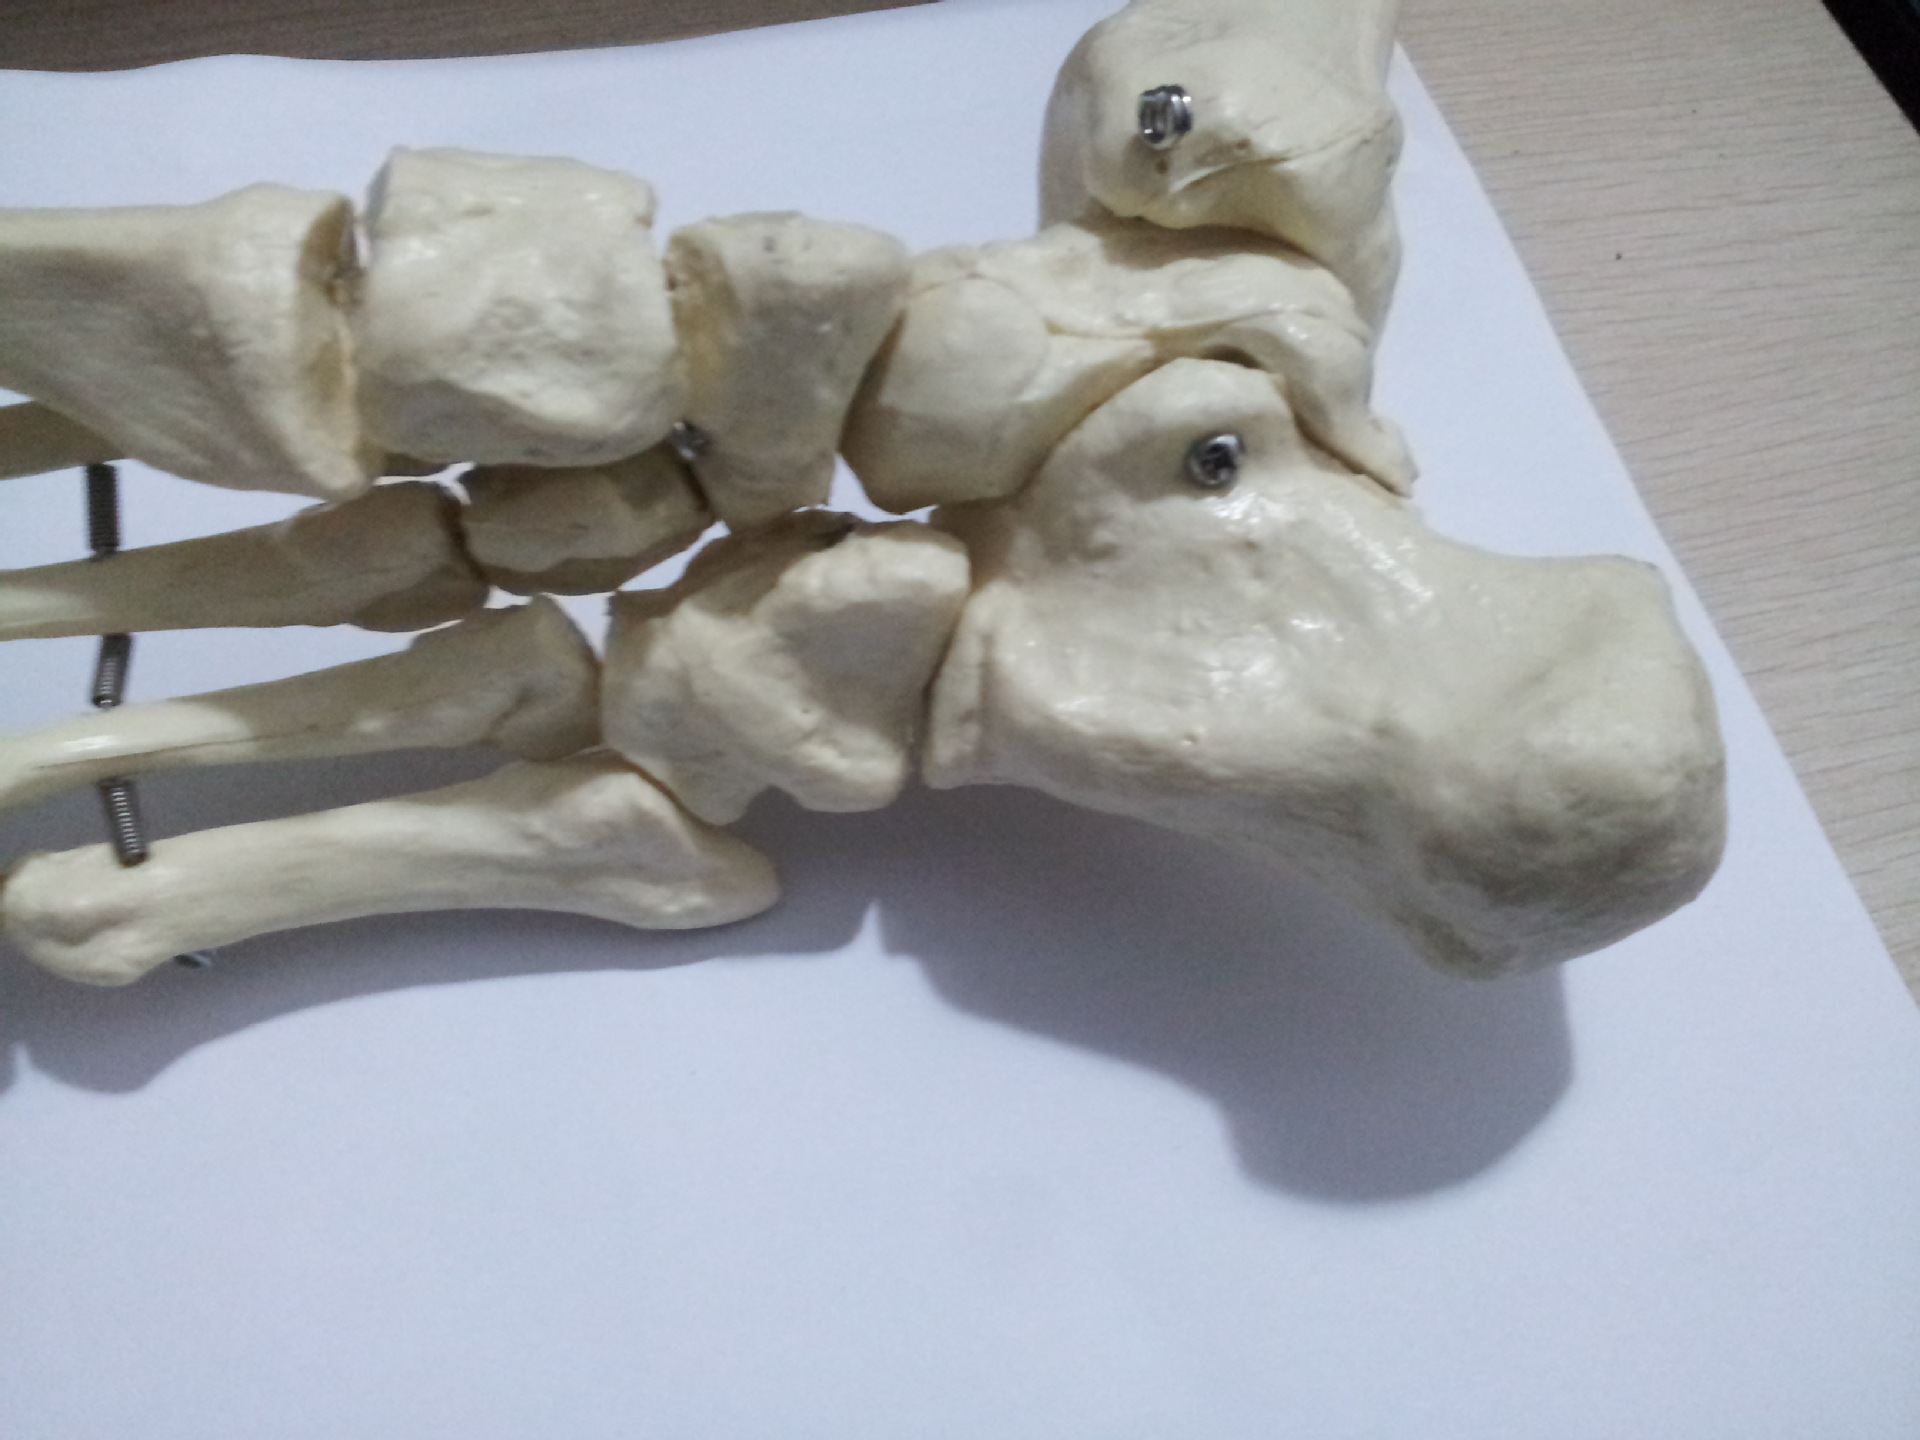 骨骼模型_1:1脚关节模型 功能足部 教学培训专用骨骼 - 阿里巴巴